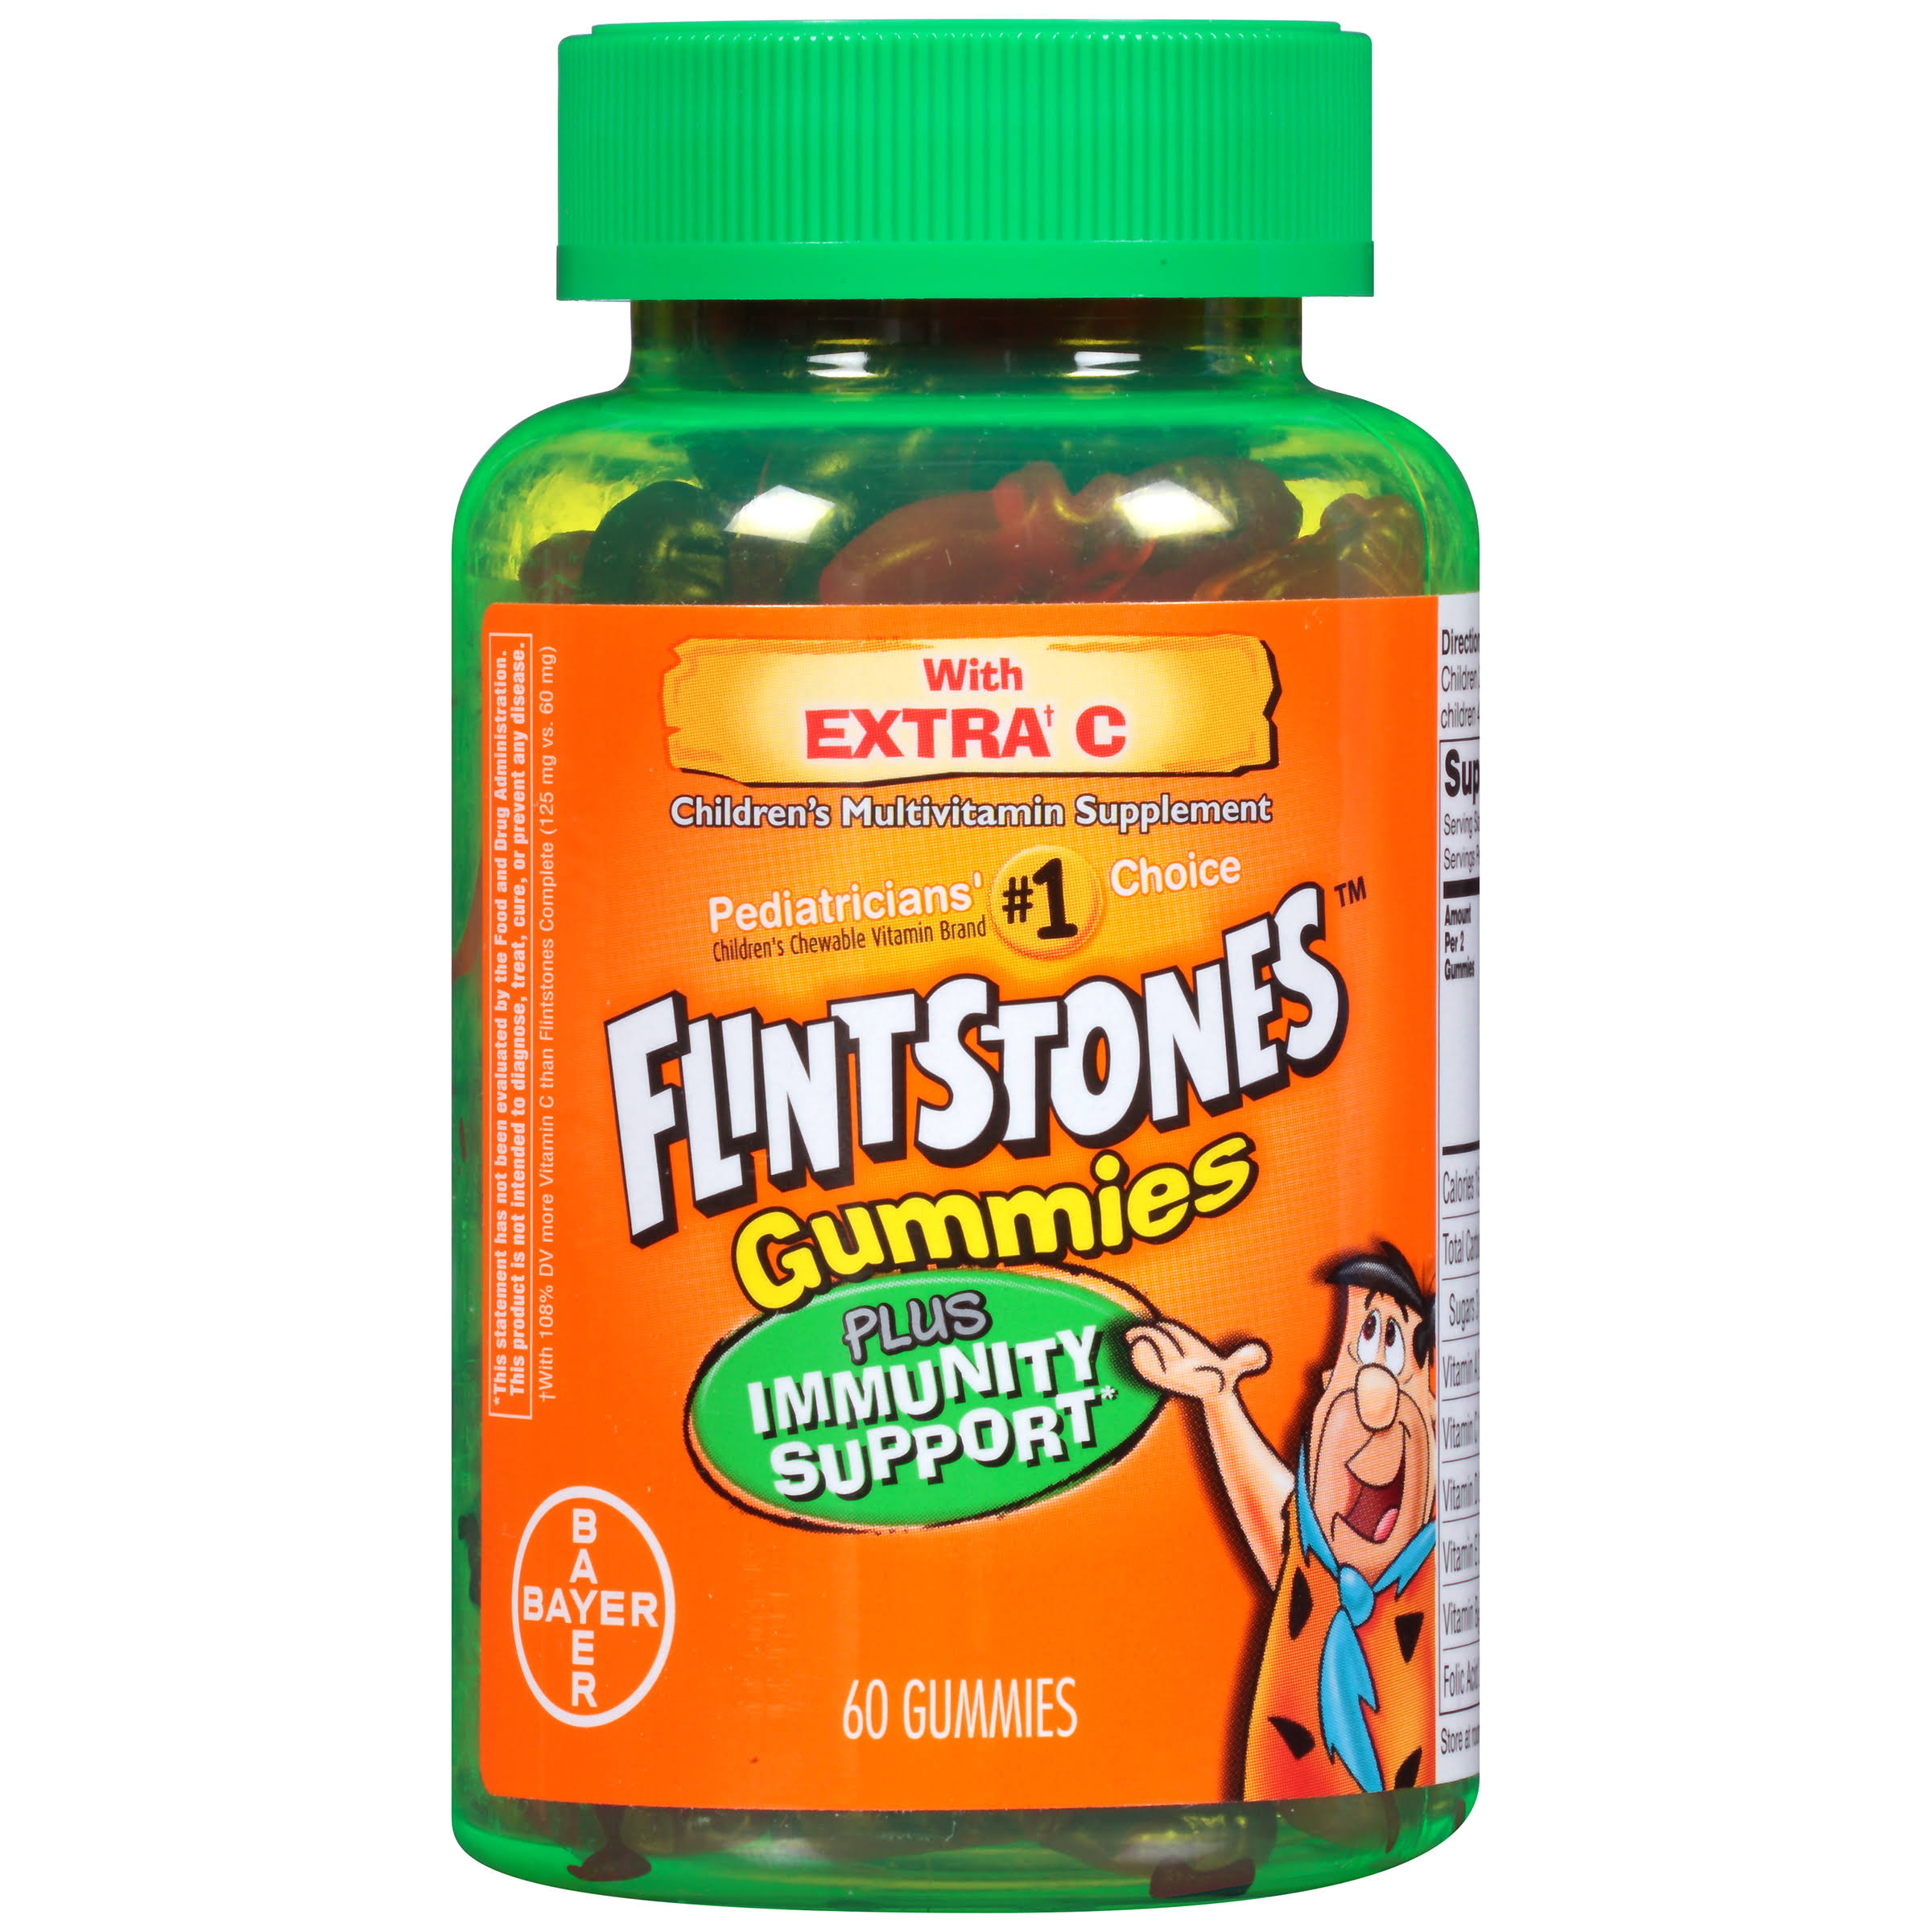 Flintstones Children's Multivitamin Plus Immunity Support Gummies - x60